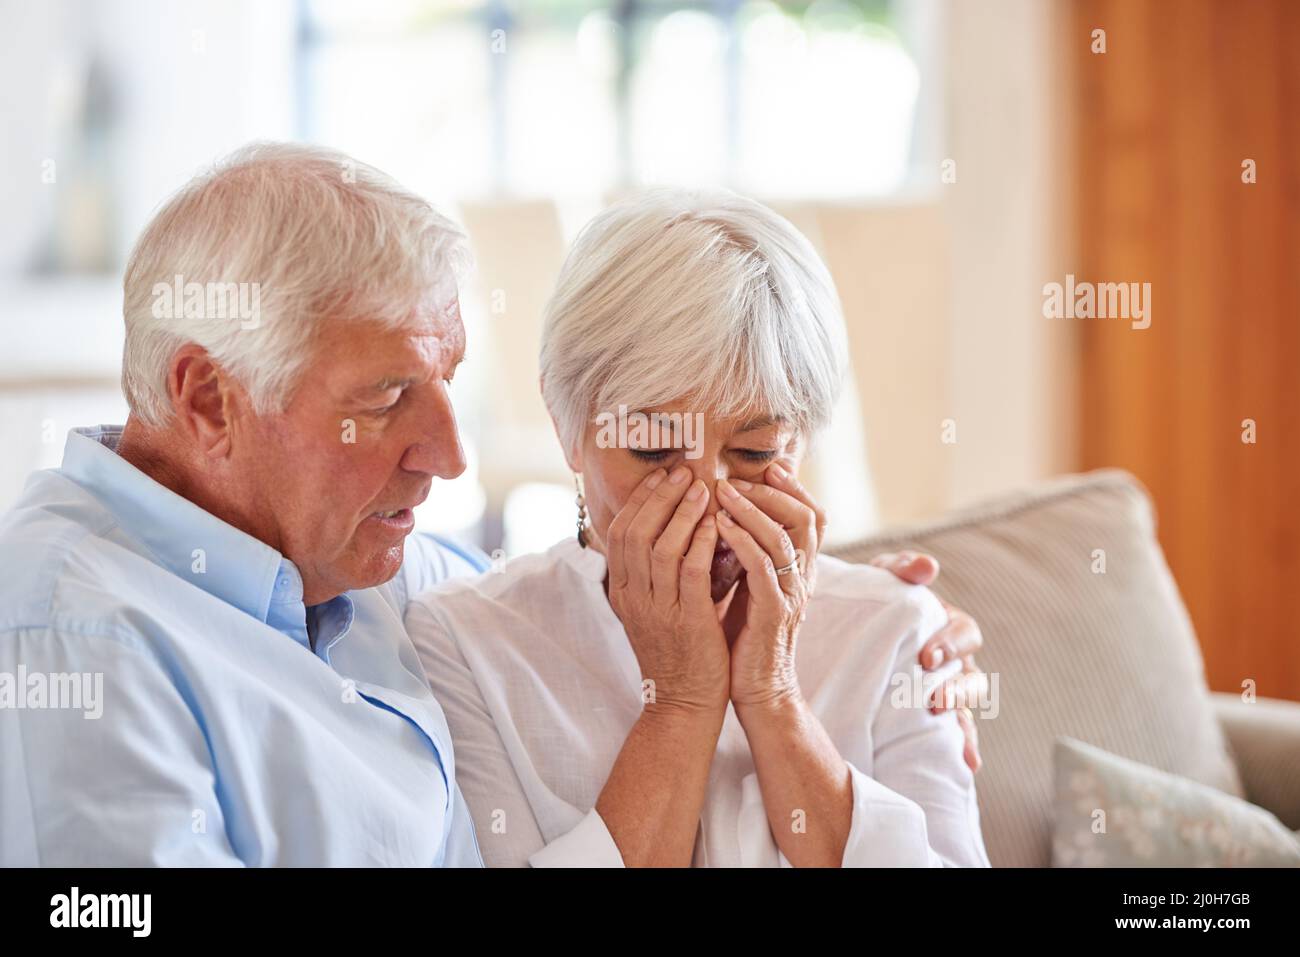 Die erste Pflicht der Liebe ist das Zuhören. Schuss eines älteren Mannes, der seine Frau tröstet. Stockfoto